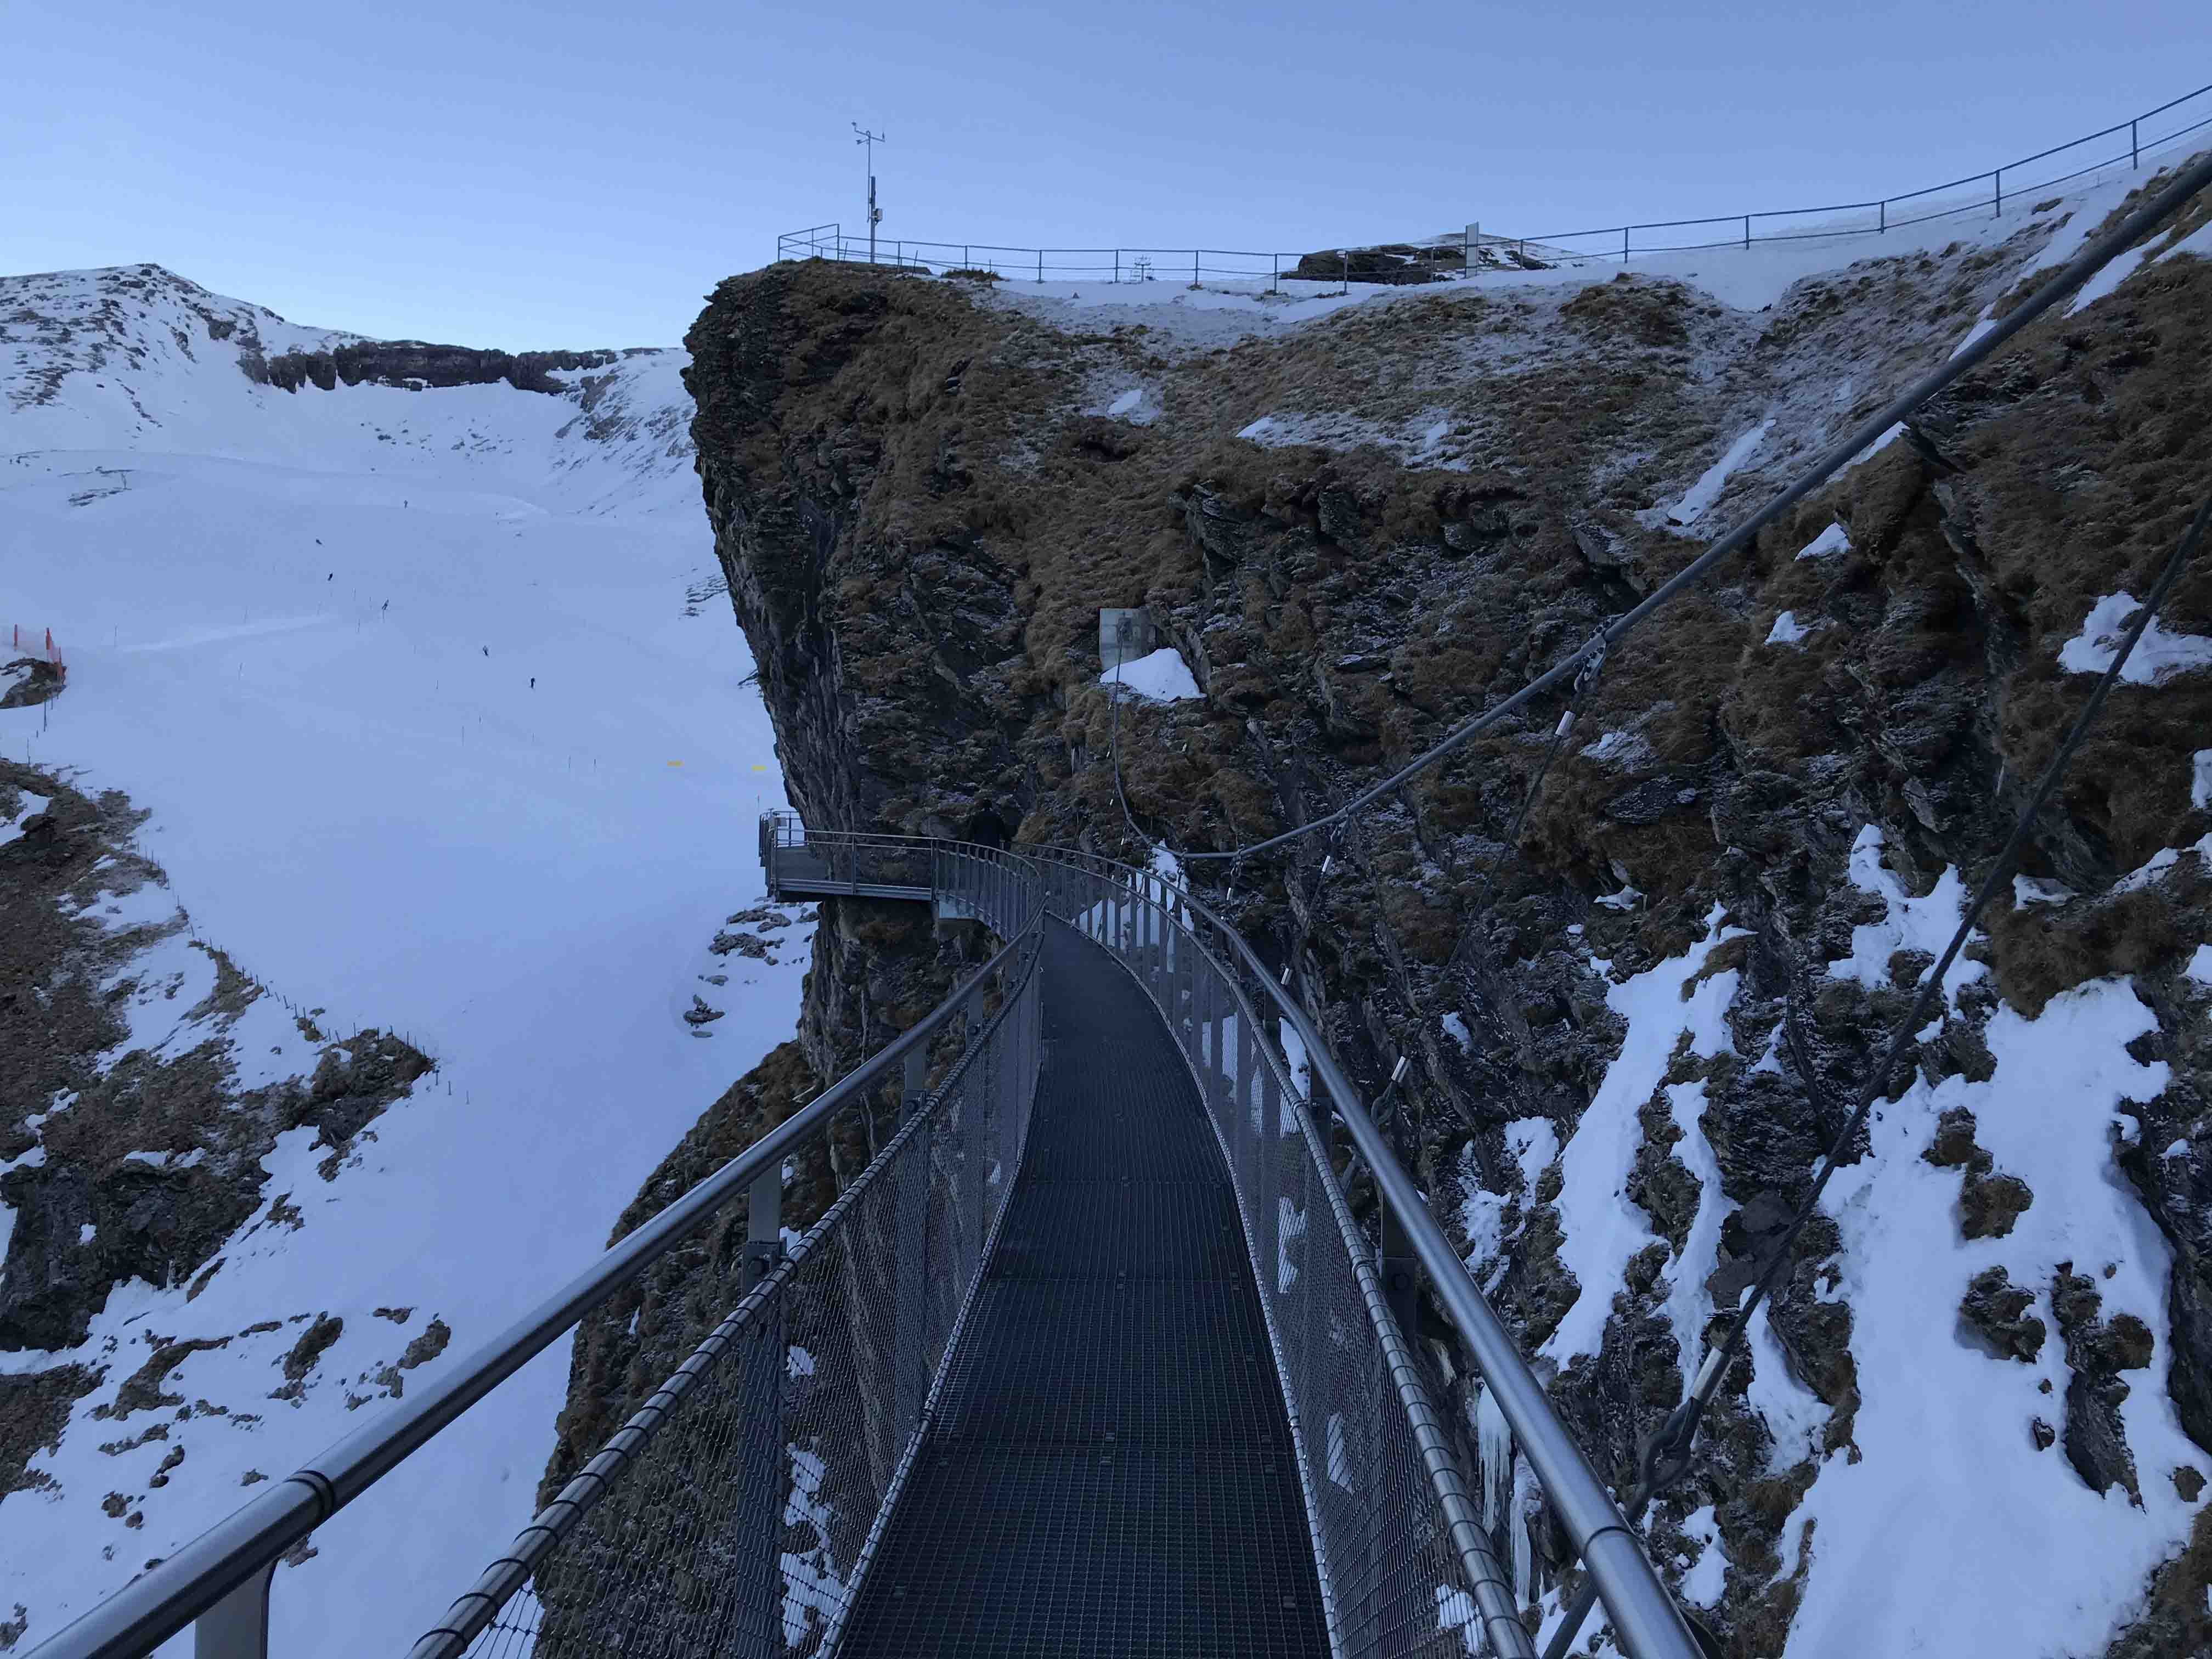 Ferienwohnung Chalet Anemone Grindelwald-First Cliff Walk Hängebrücke